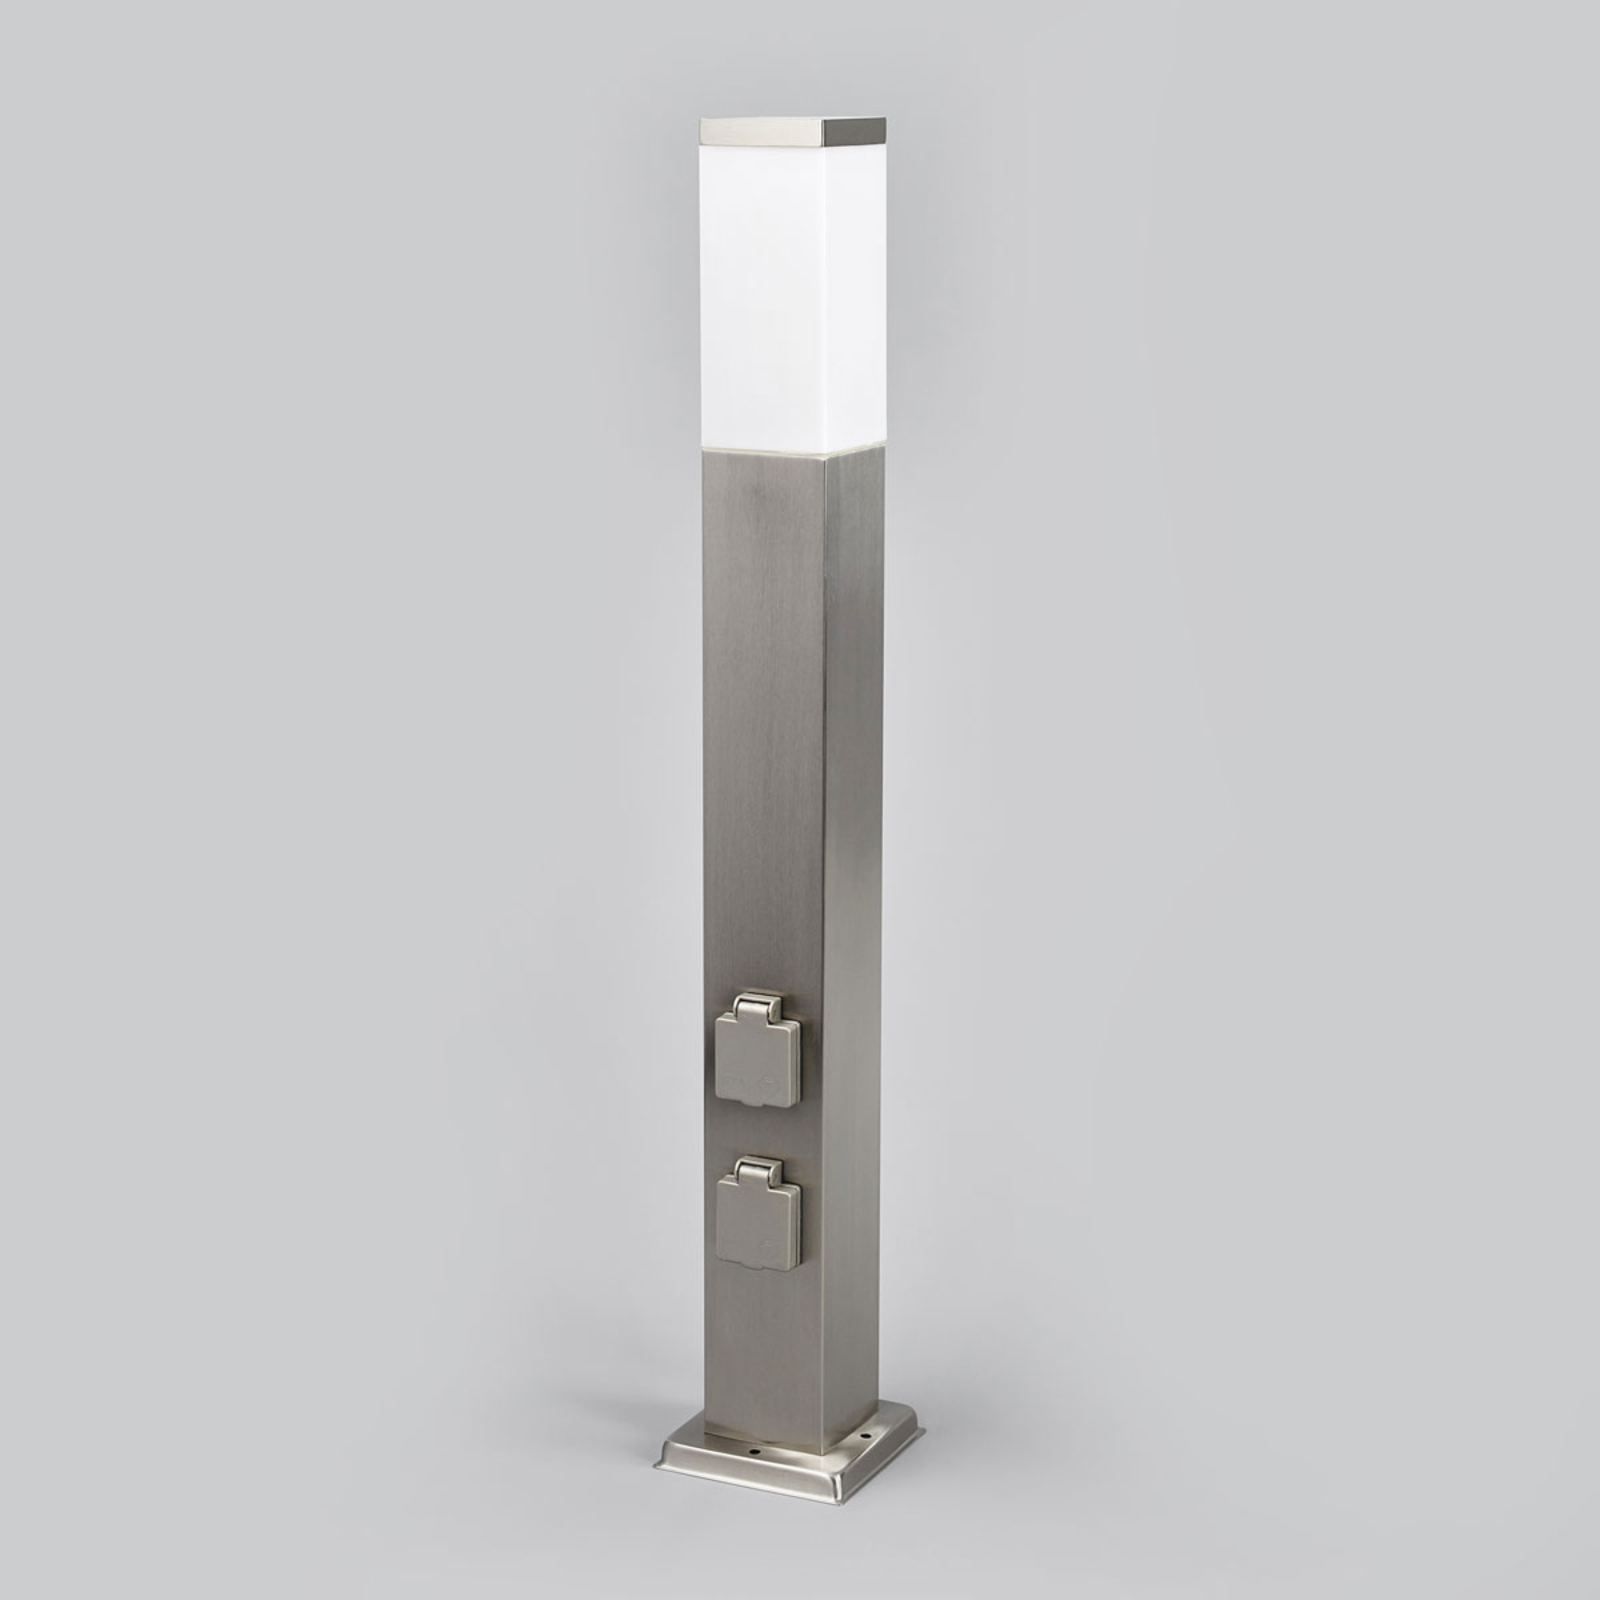 Lampione LED 400166, acciaio inox con 2 prese